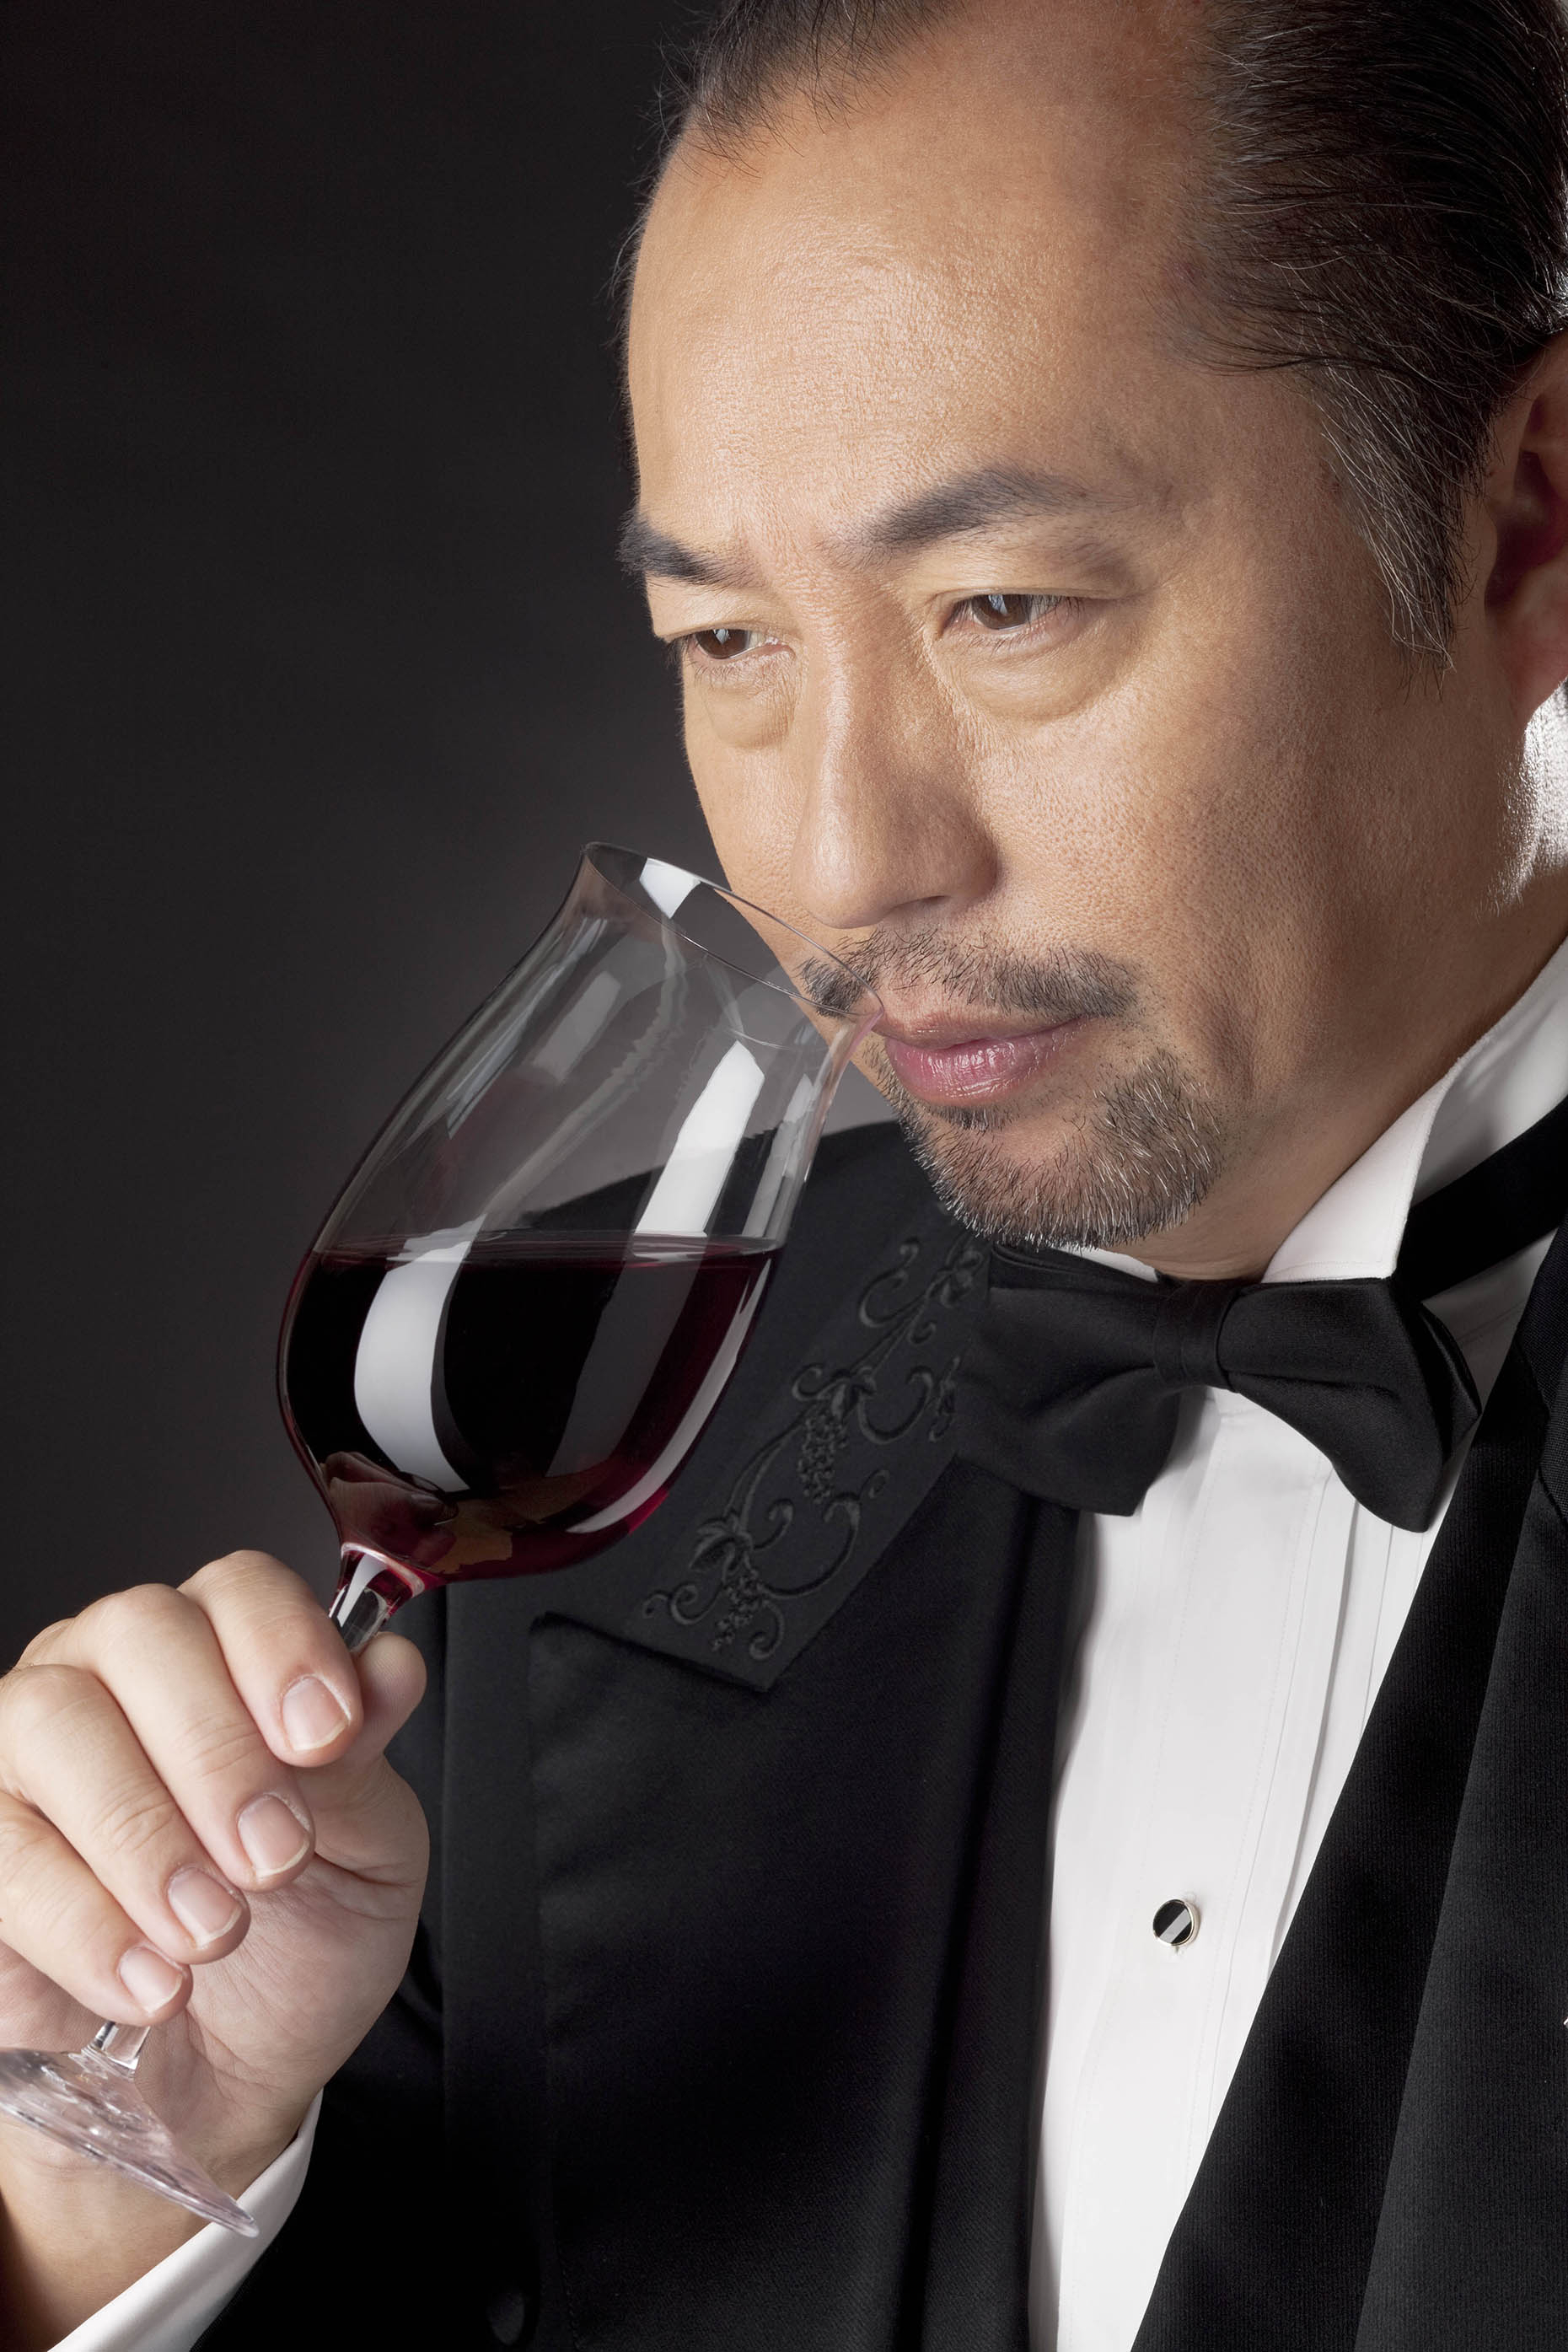 価格は安く ワイン生活 楽しく飲むための200のヒント 田崎真也 平成21年6月1日新潮文庫 226ページ 